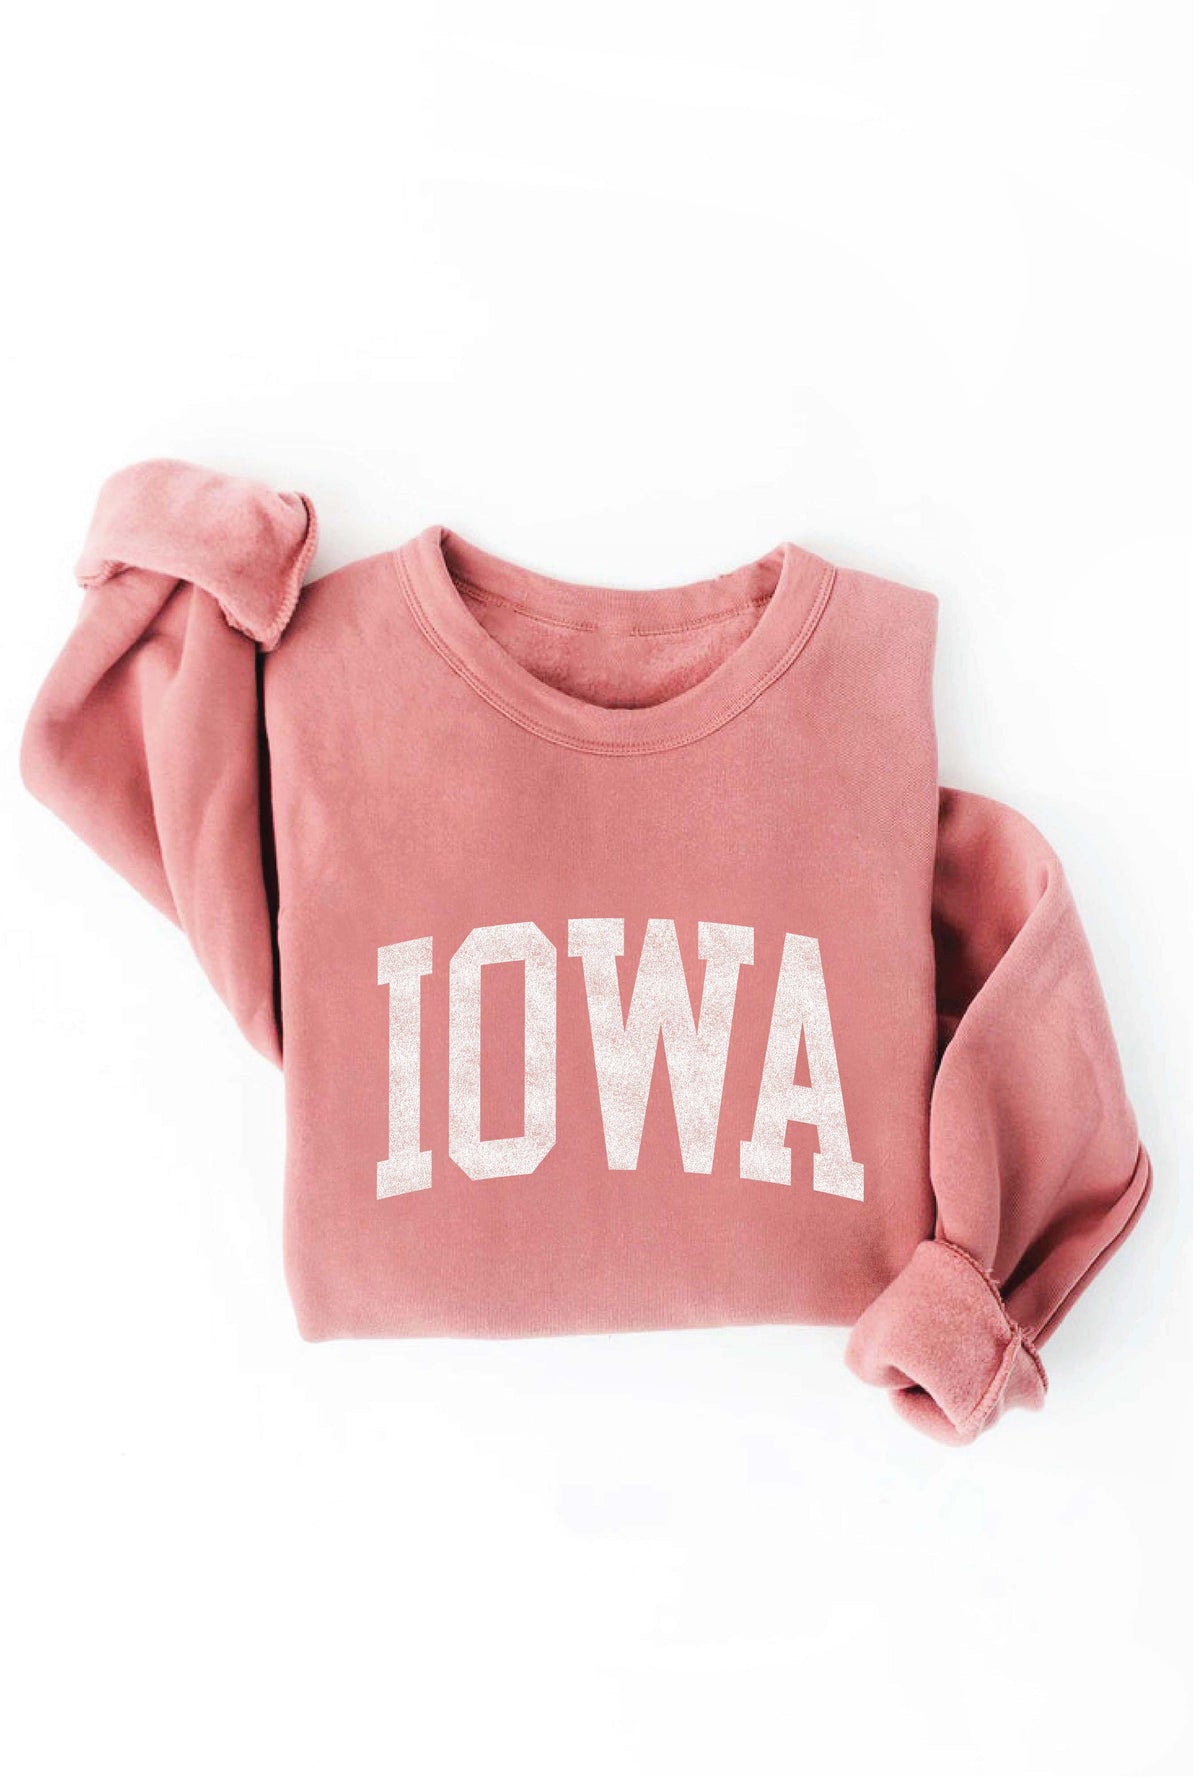 Plus Iowa Graphic Sweatshirt- (Mauve)